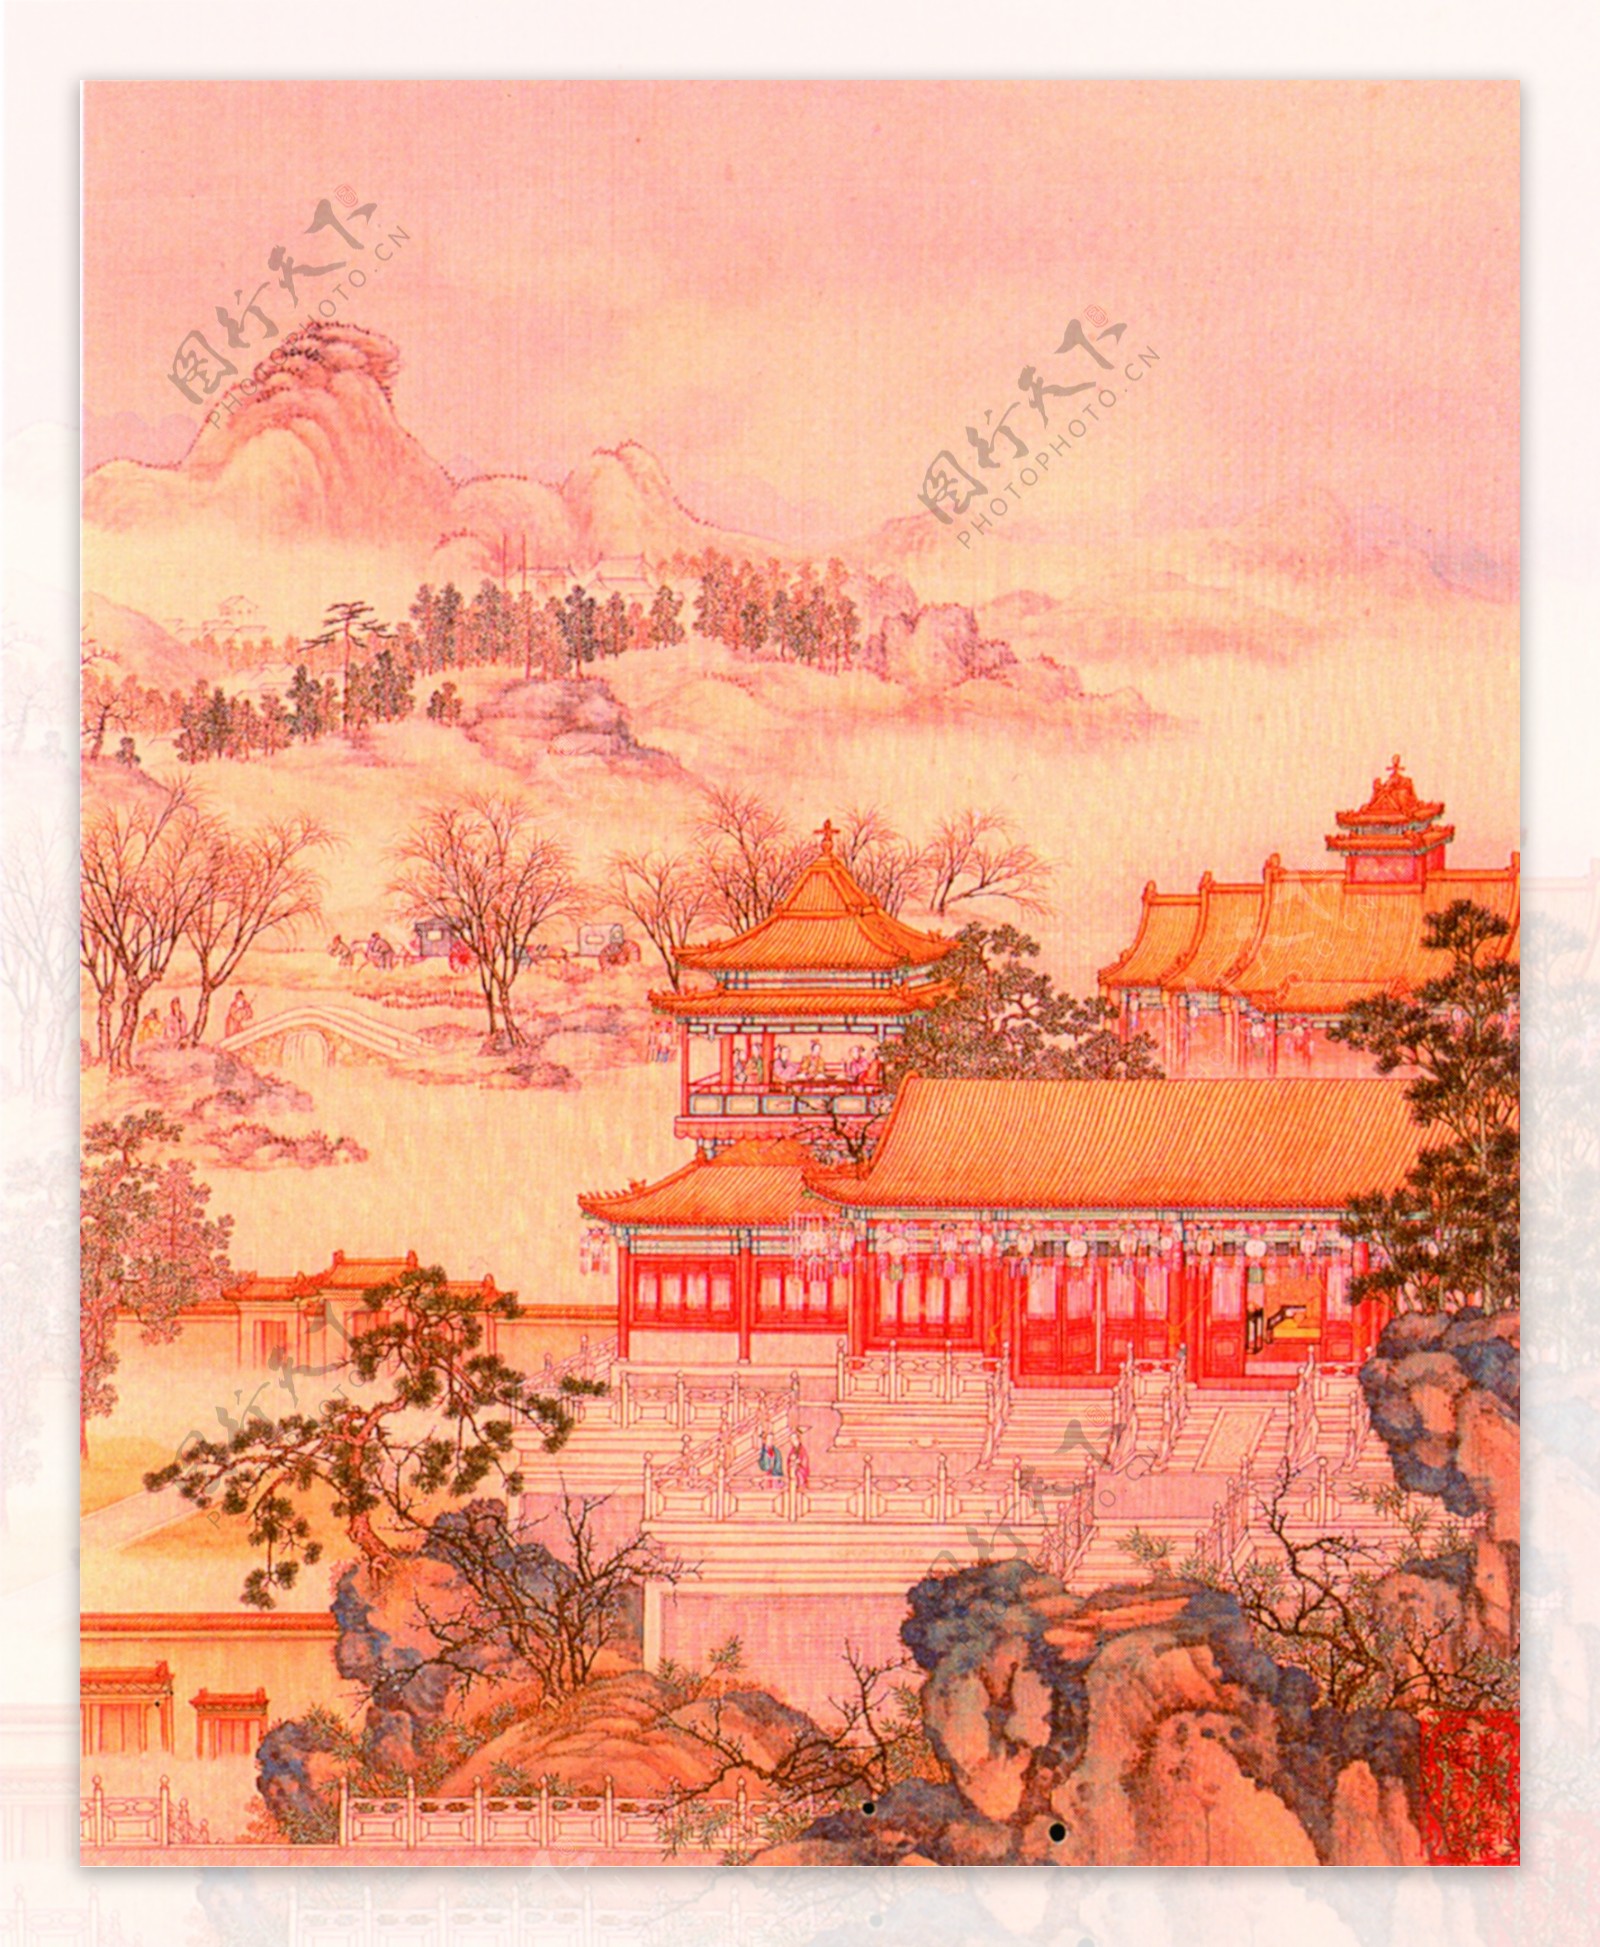 中国古典艺术楼阁